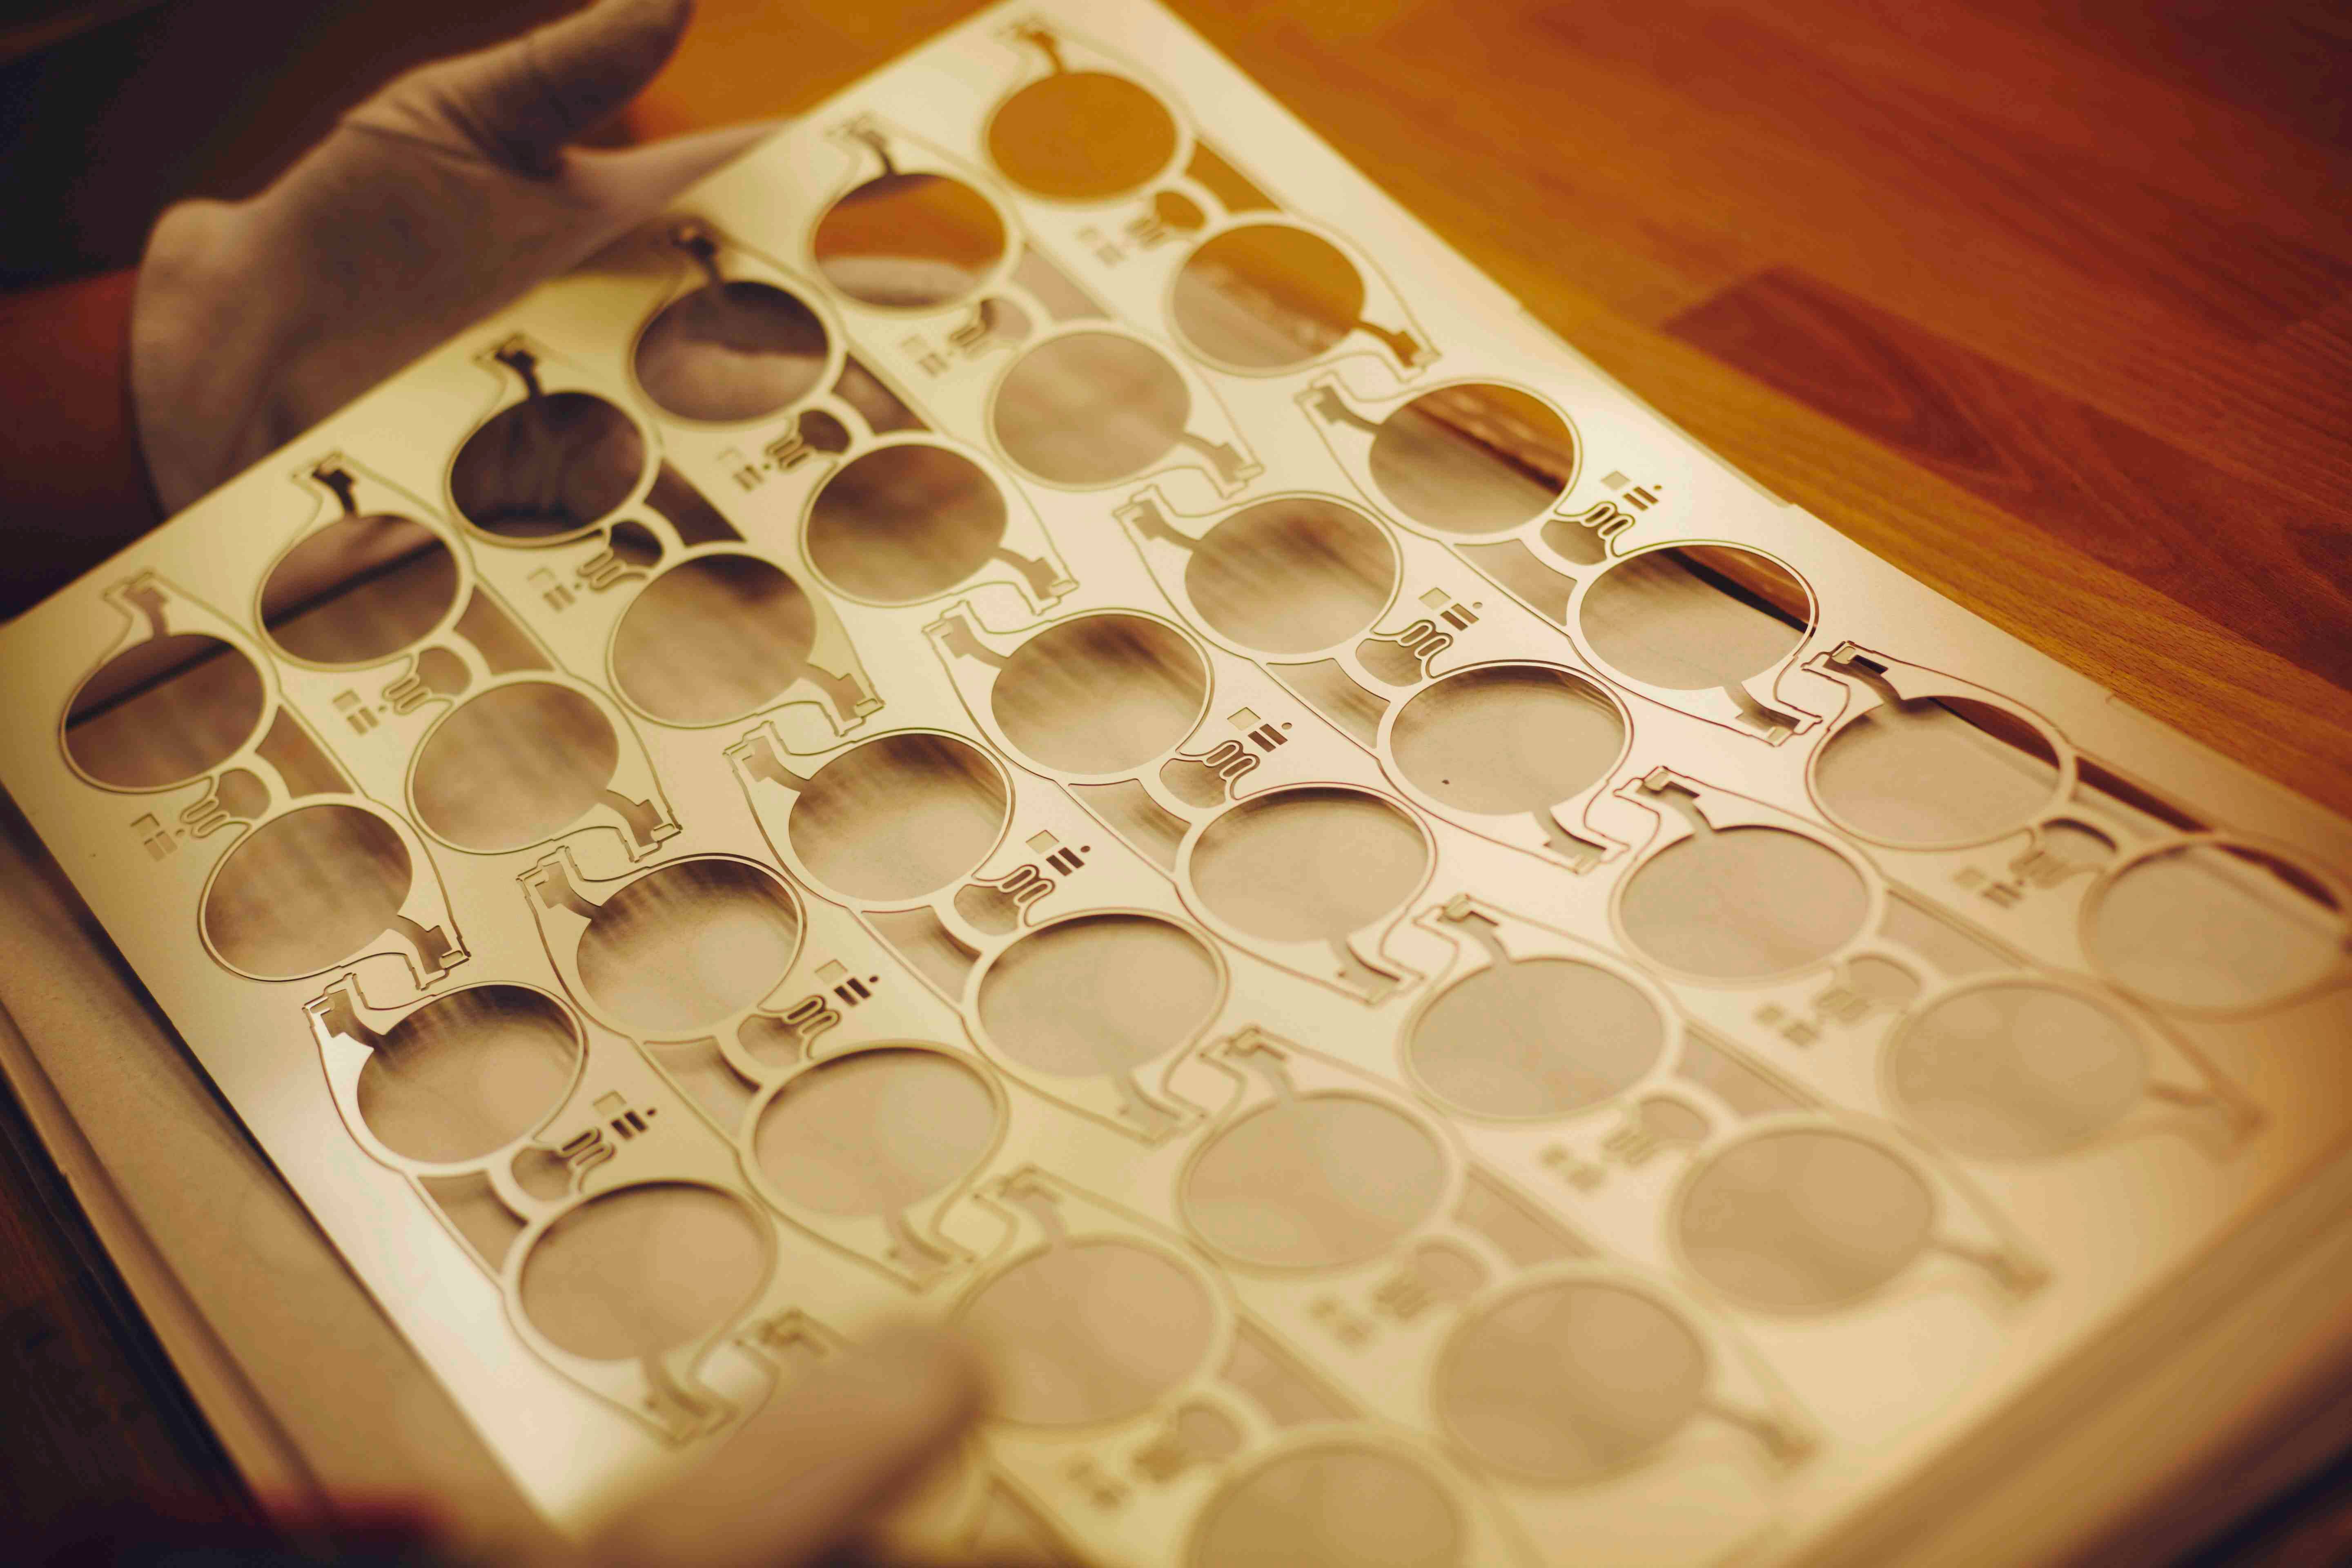 Une plaque d'acier inoxydable à partir de laquelle sont réalisées les lunettes aussi légères qu'une feuille de papier.